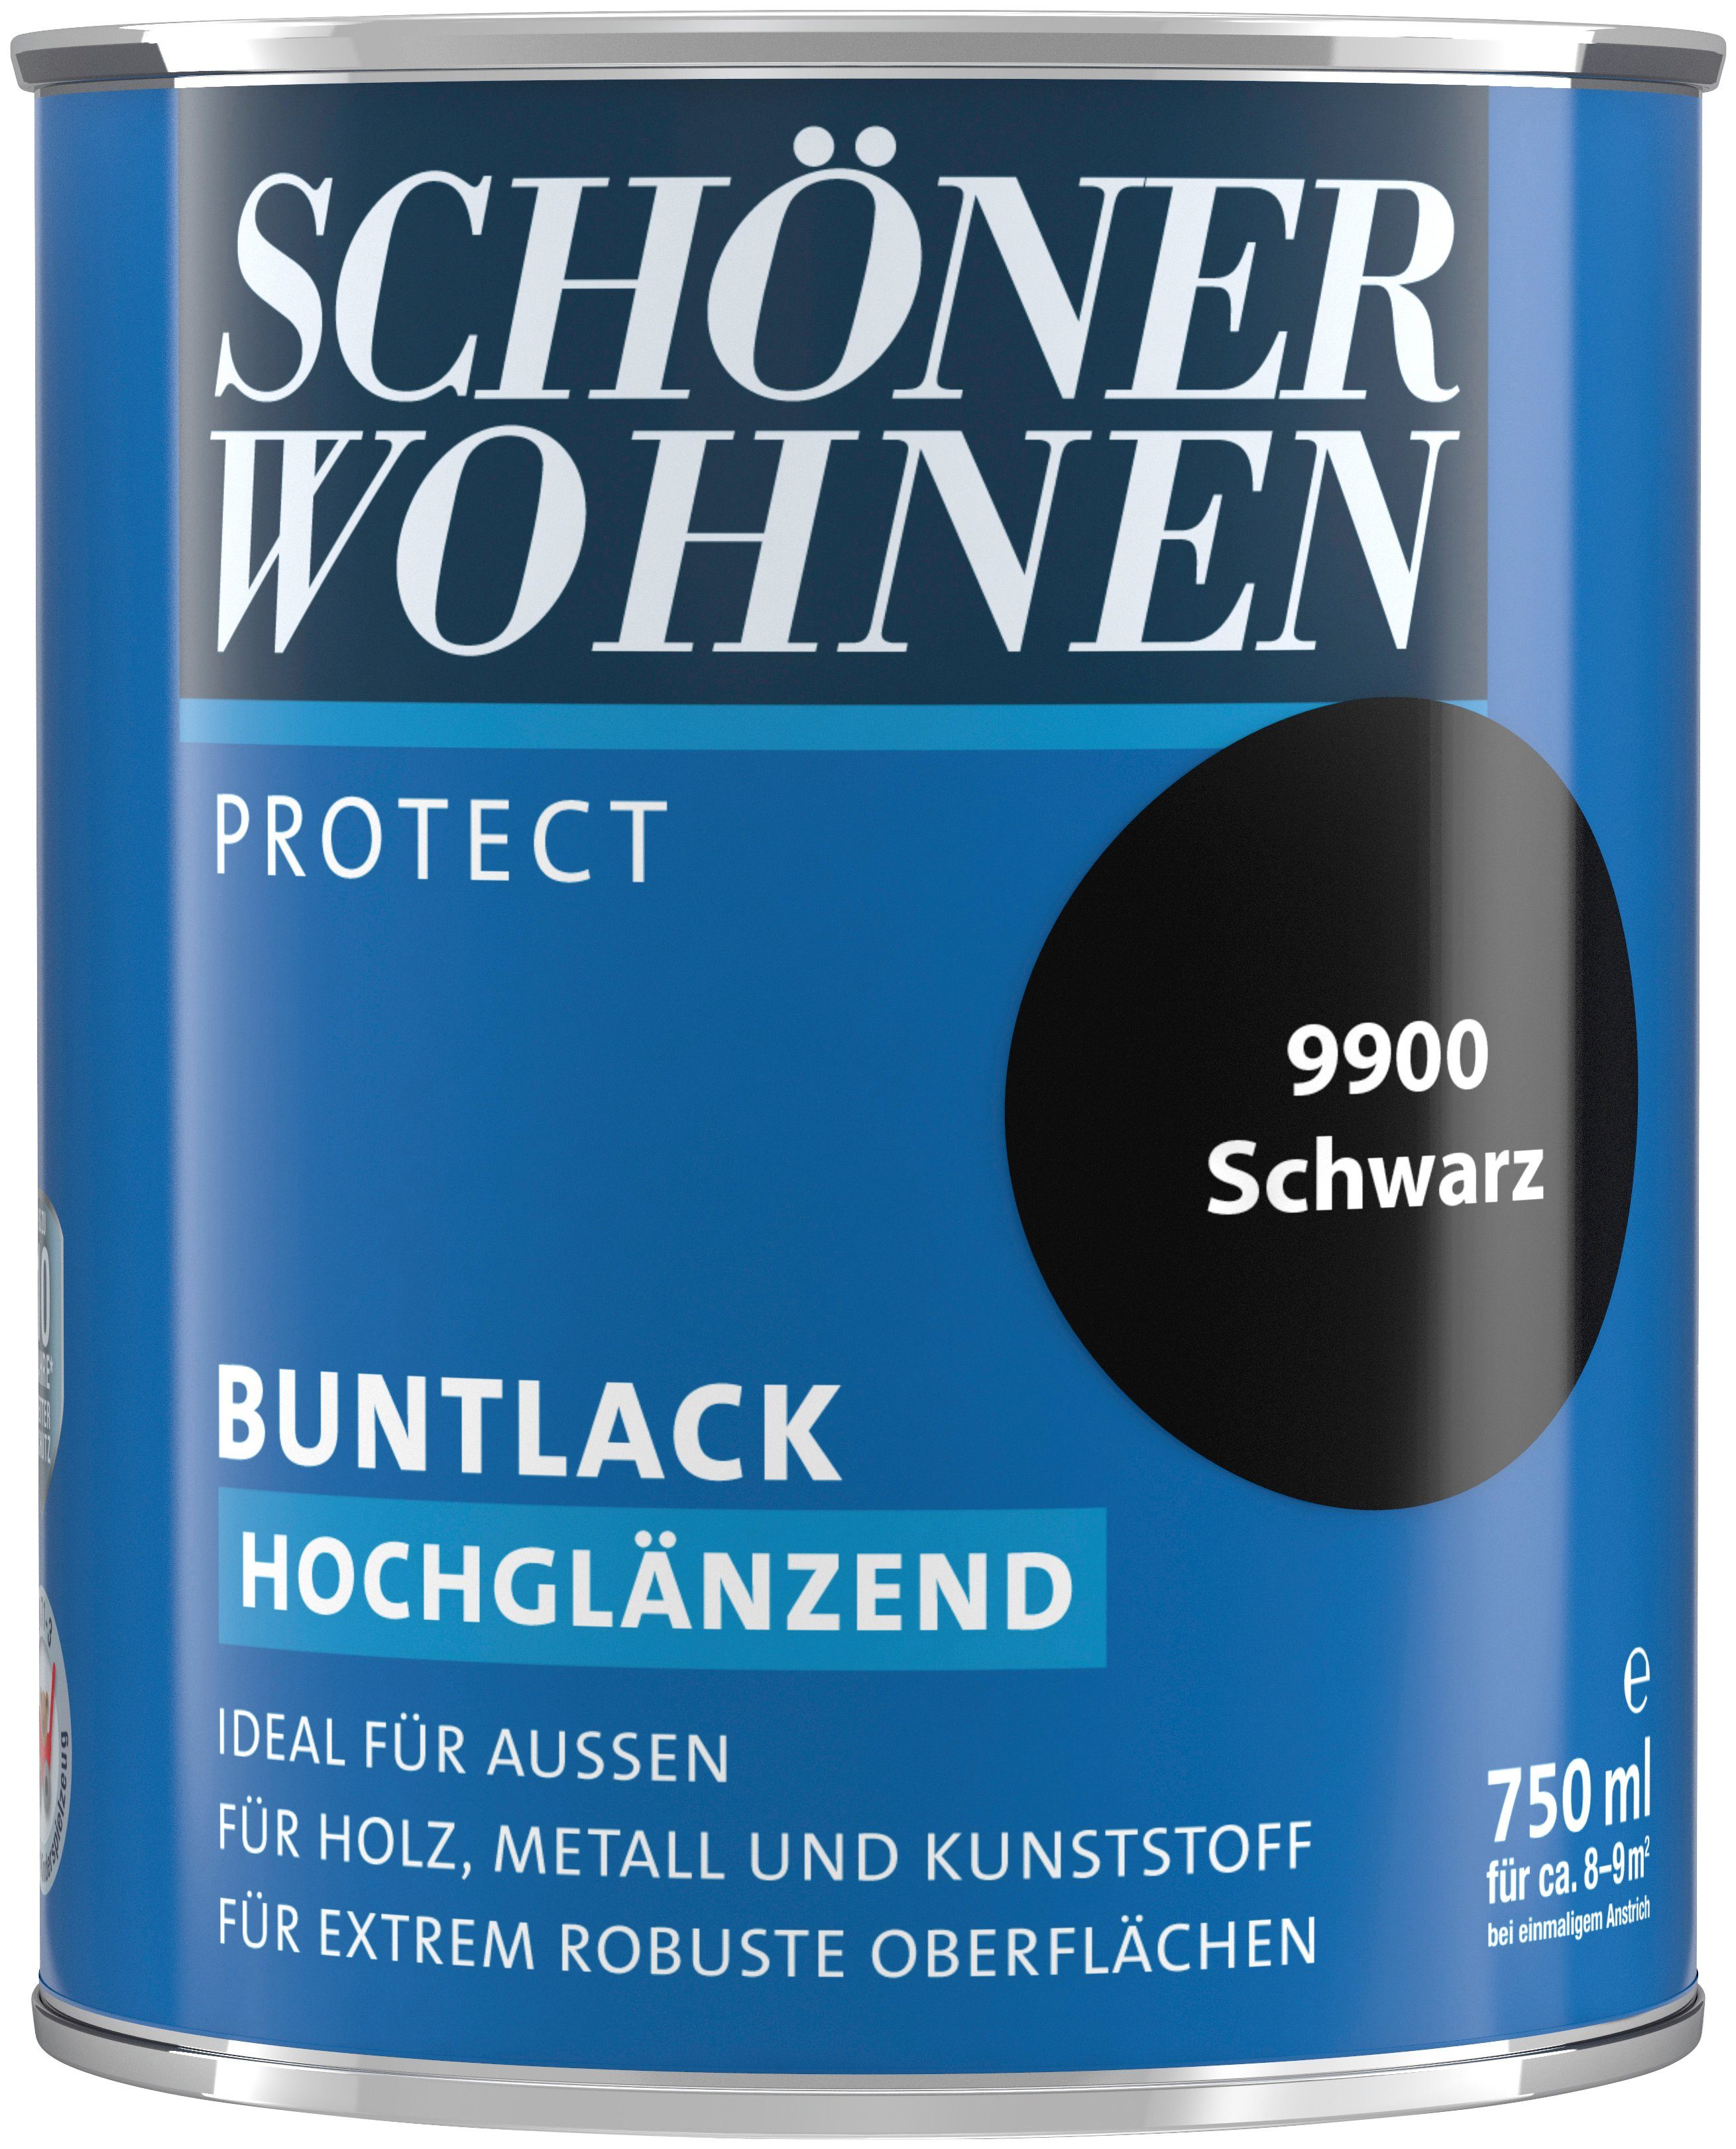 Protect SCHÖNER hochglänzend, ml, Lack Buntlack, für 750 schwarz, ideal außen FARBE WOHNEN